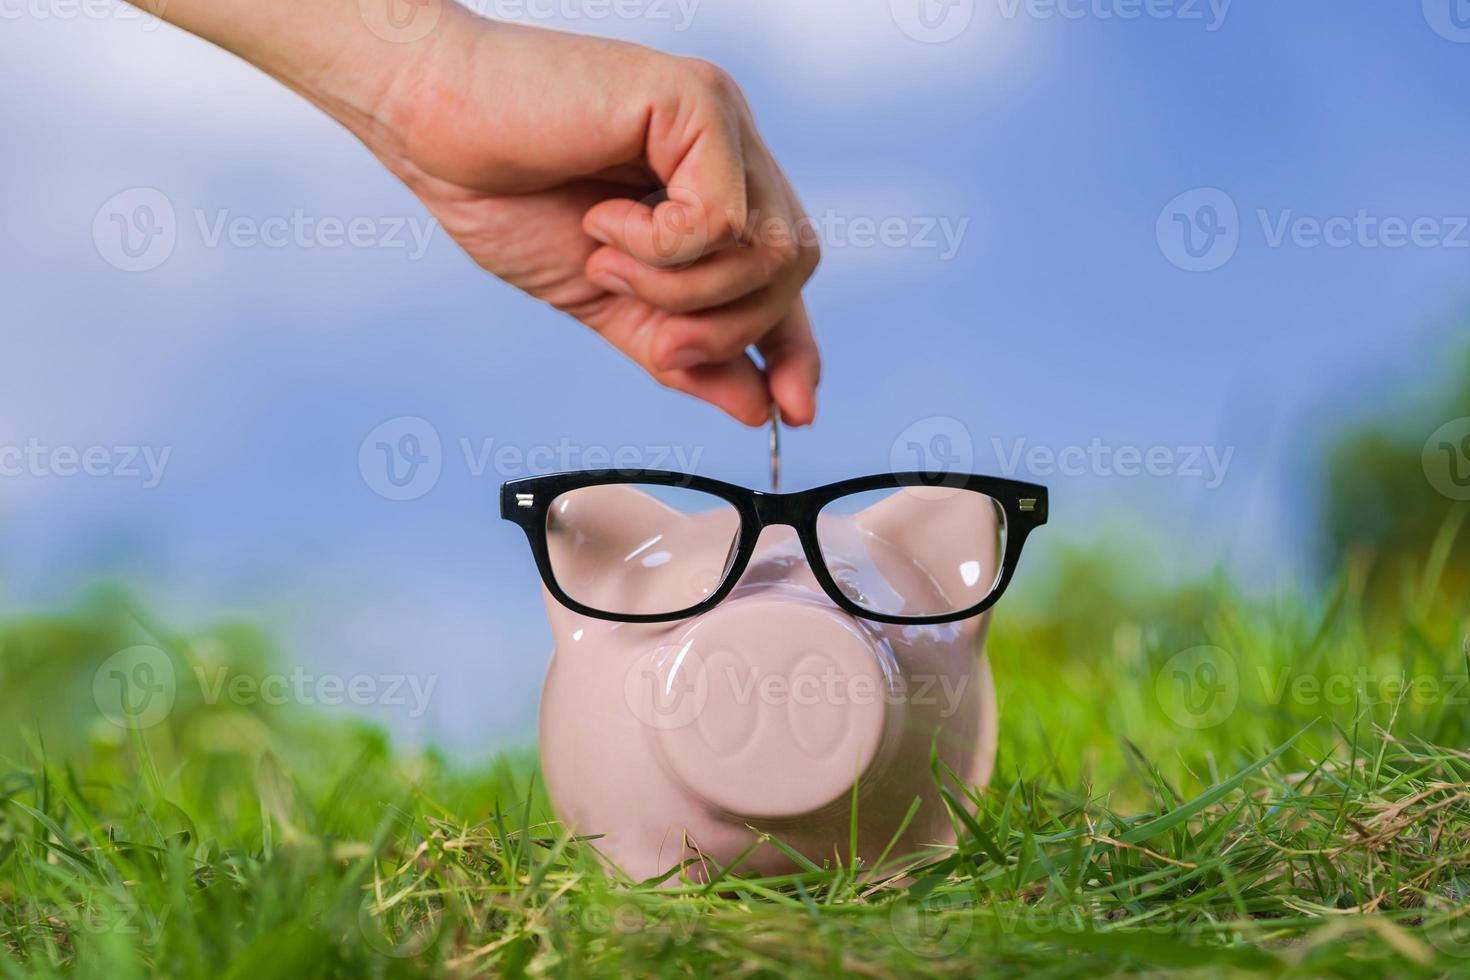 salvadanaio rosa con gli occhiali sull'erba e la mano che mette una moneta foto